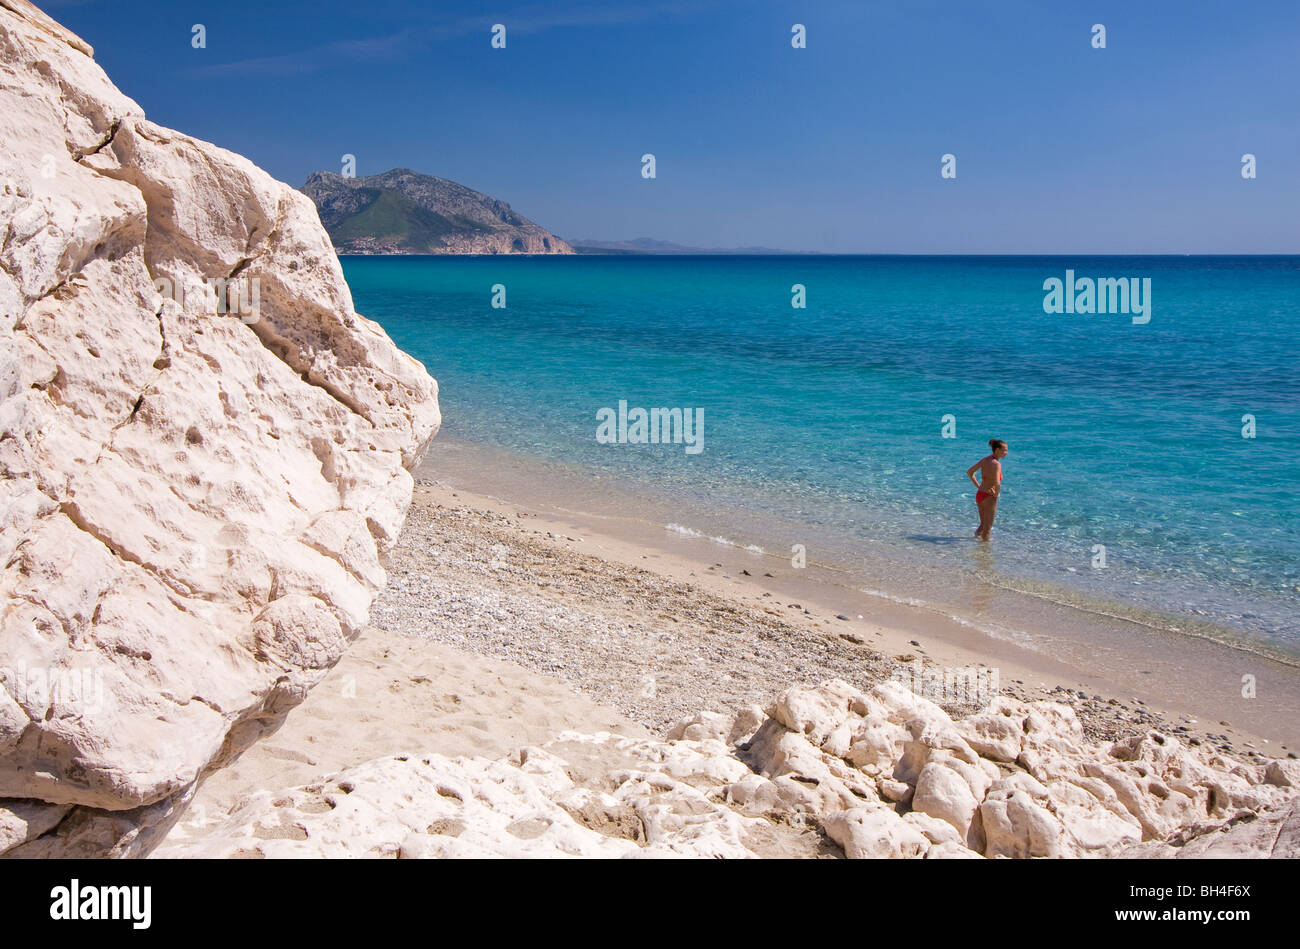 Plage Cala Luna vide, Sardaigne, île de l'Italie. Jeune femme solitaire en eau bleu clair dans la baie de Cala Luna, Mer Méditerranée. Banque D'Images